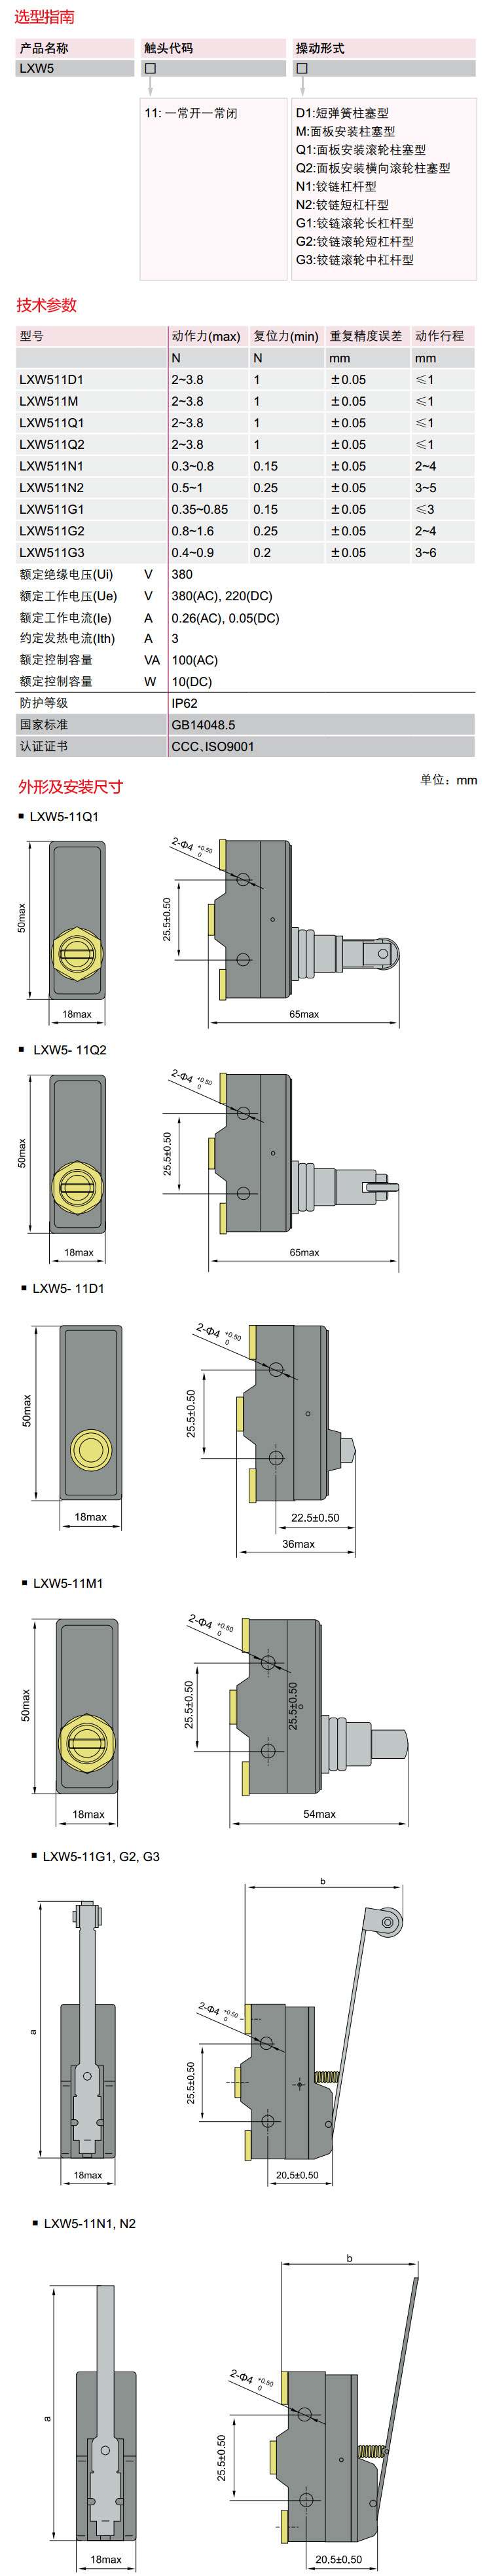 德力西微动开关 LXW5-11M自复位选型手册技术参数和外形尺寸